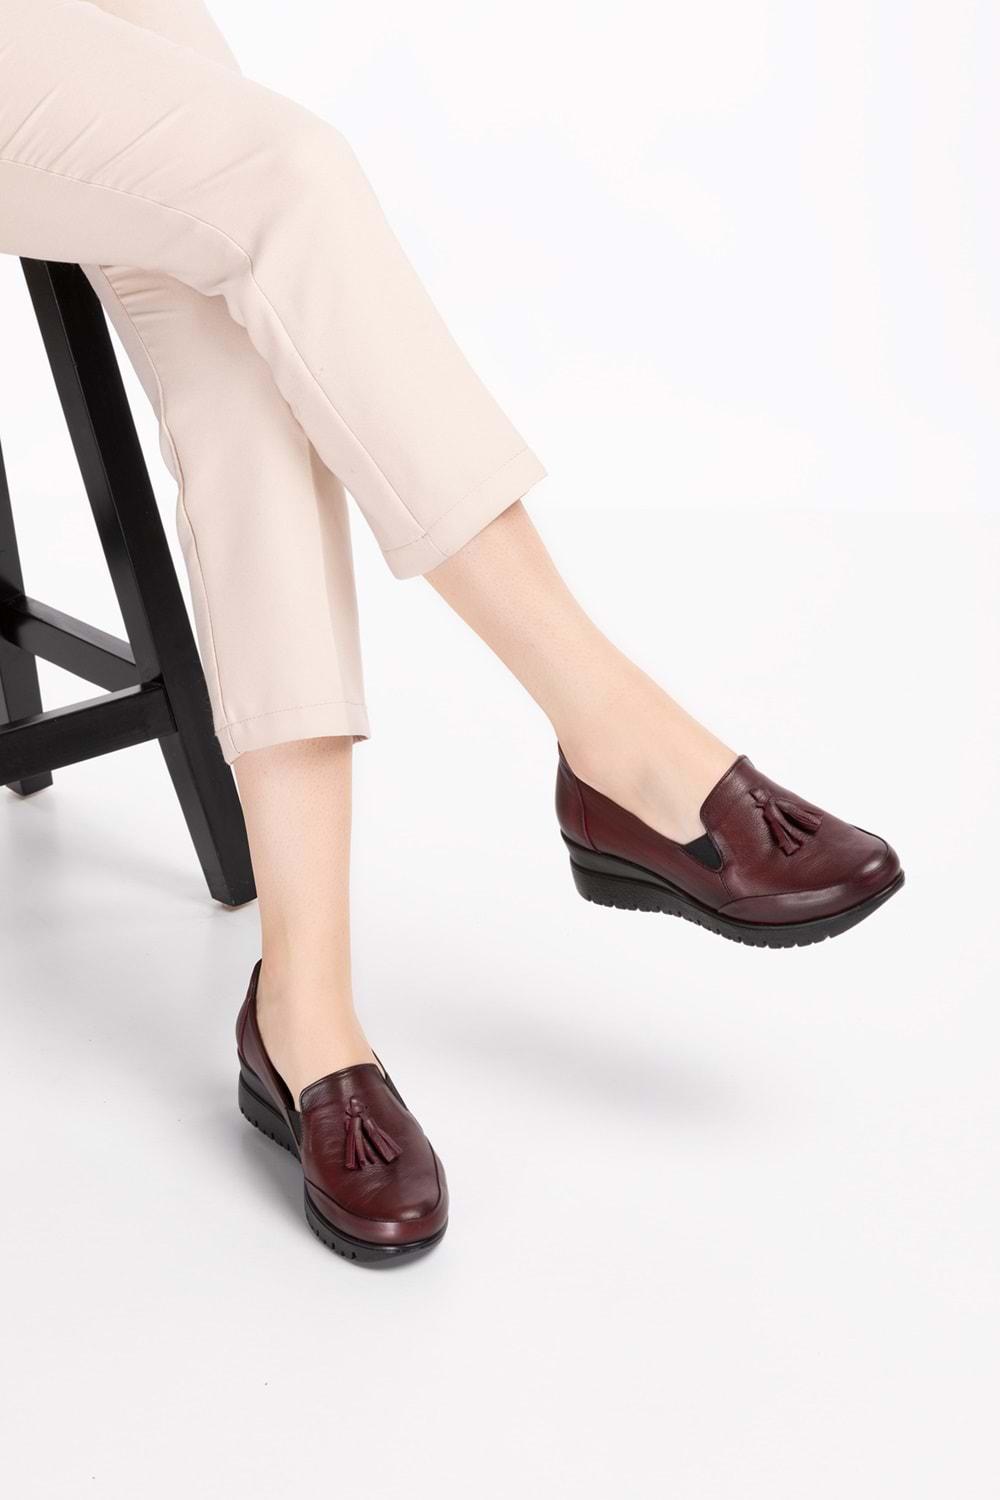 Gondol Kadın Hakiki Deri Anatomik Taban Dolgu Topuklu Günlük Ayakkabı pyt.6204 - Bordo - 36